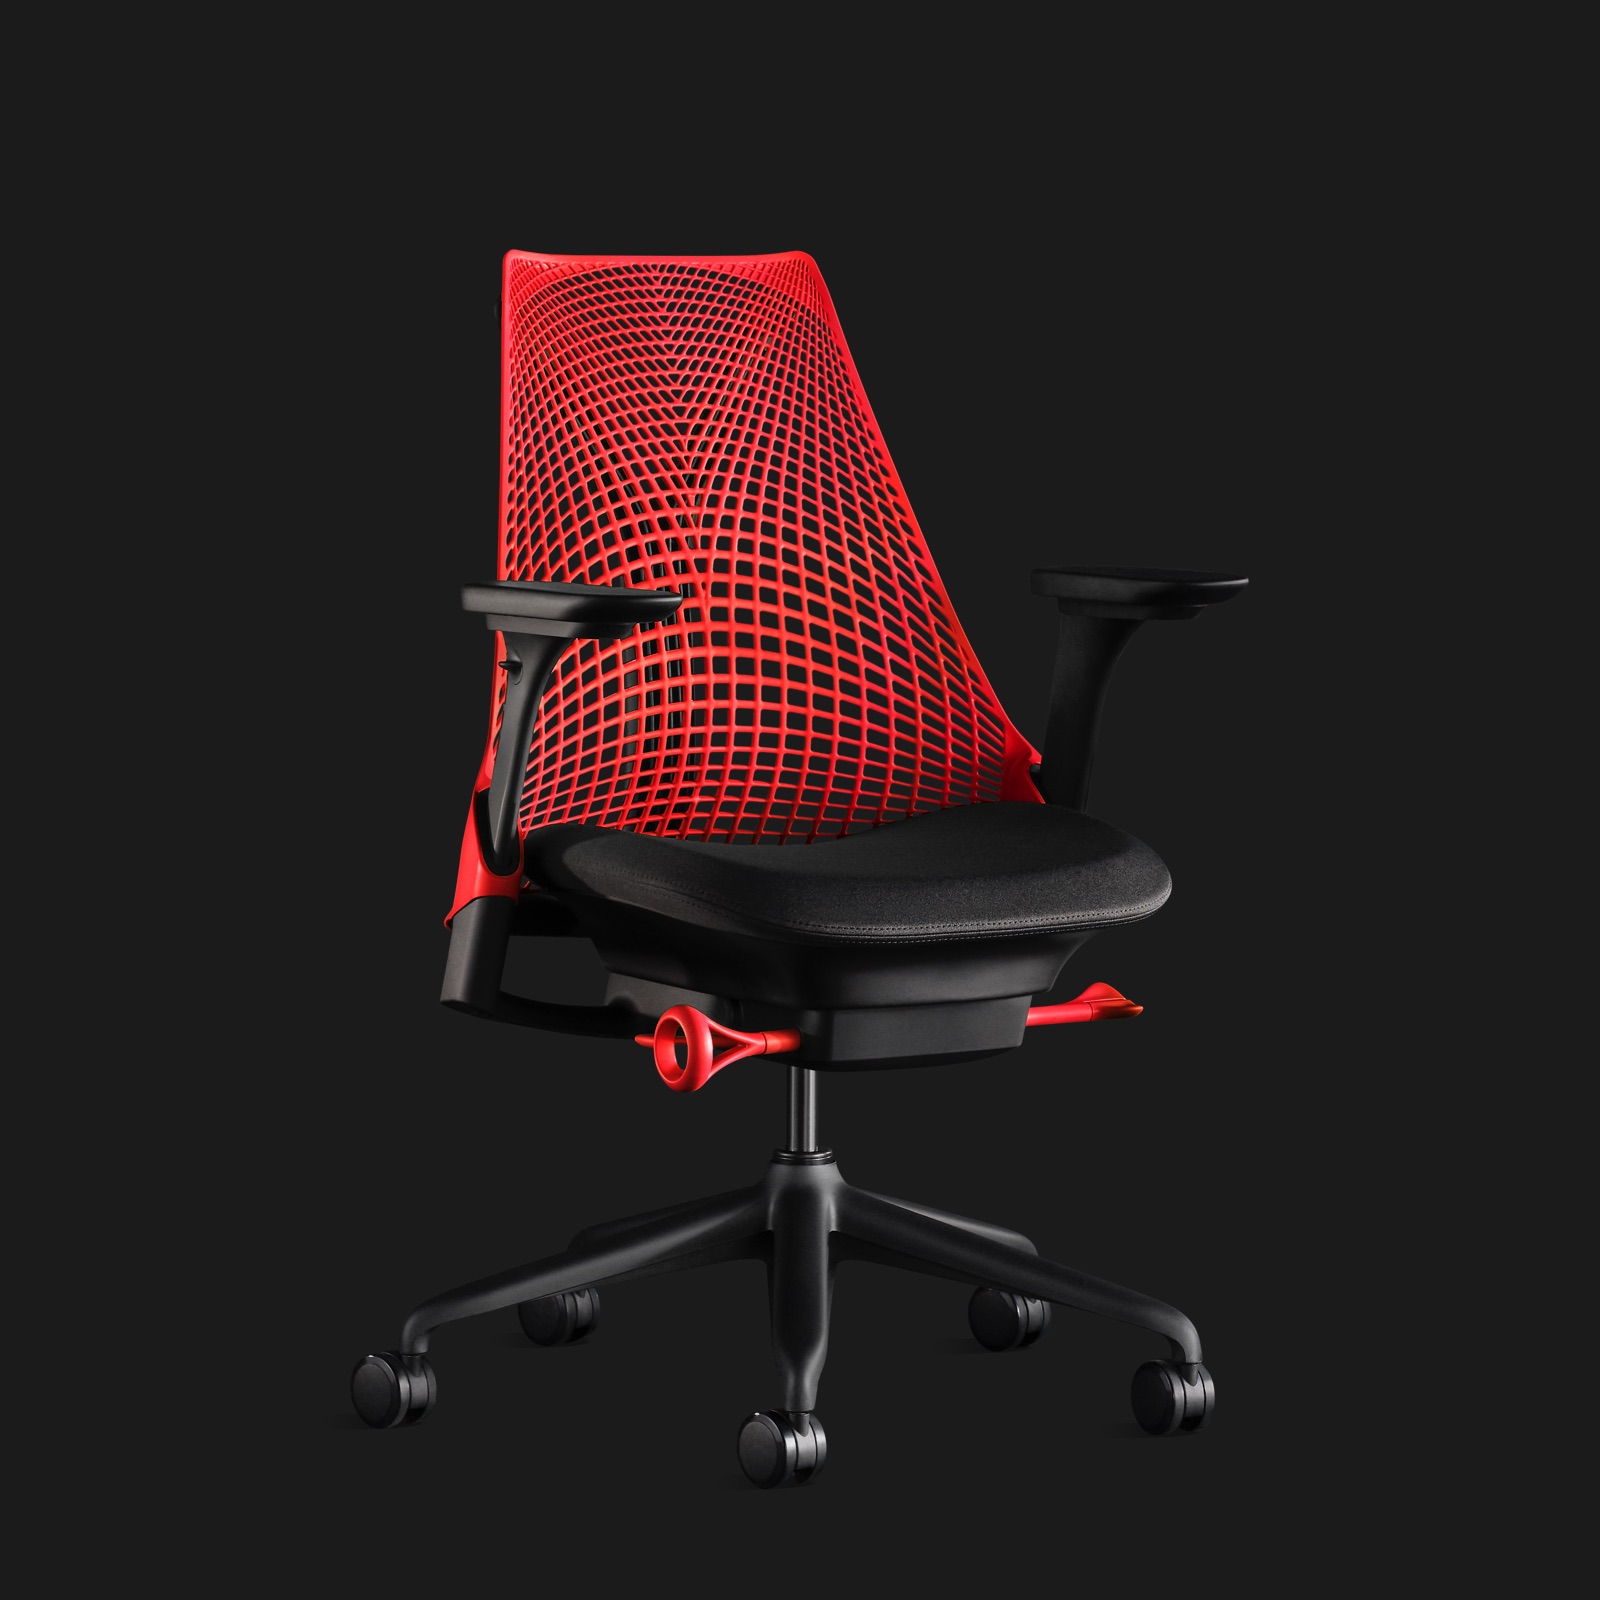 Una silla Sayl roja, vista desde un ángulo con fondo negro.